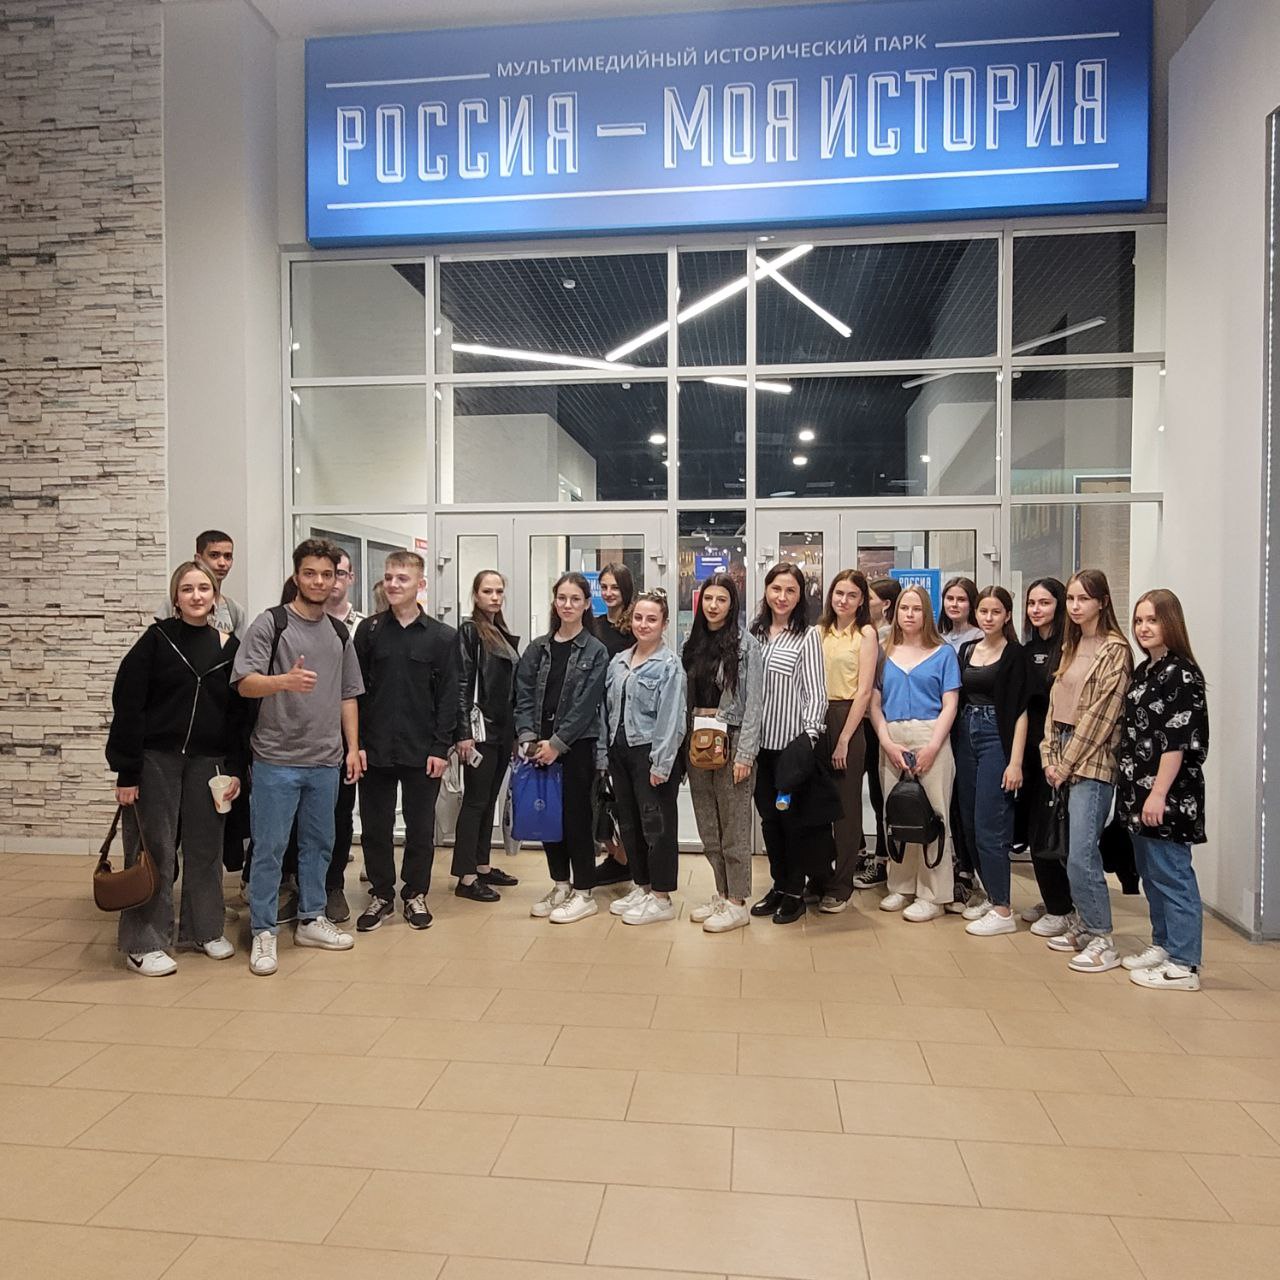 Посещение музея "Россия- моя история"